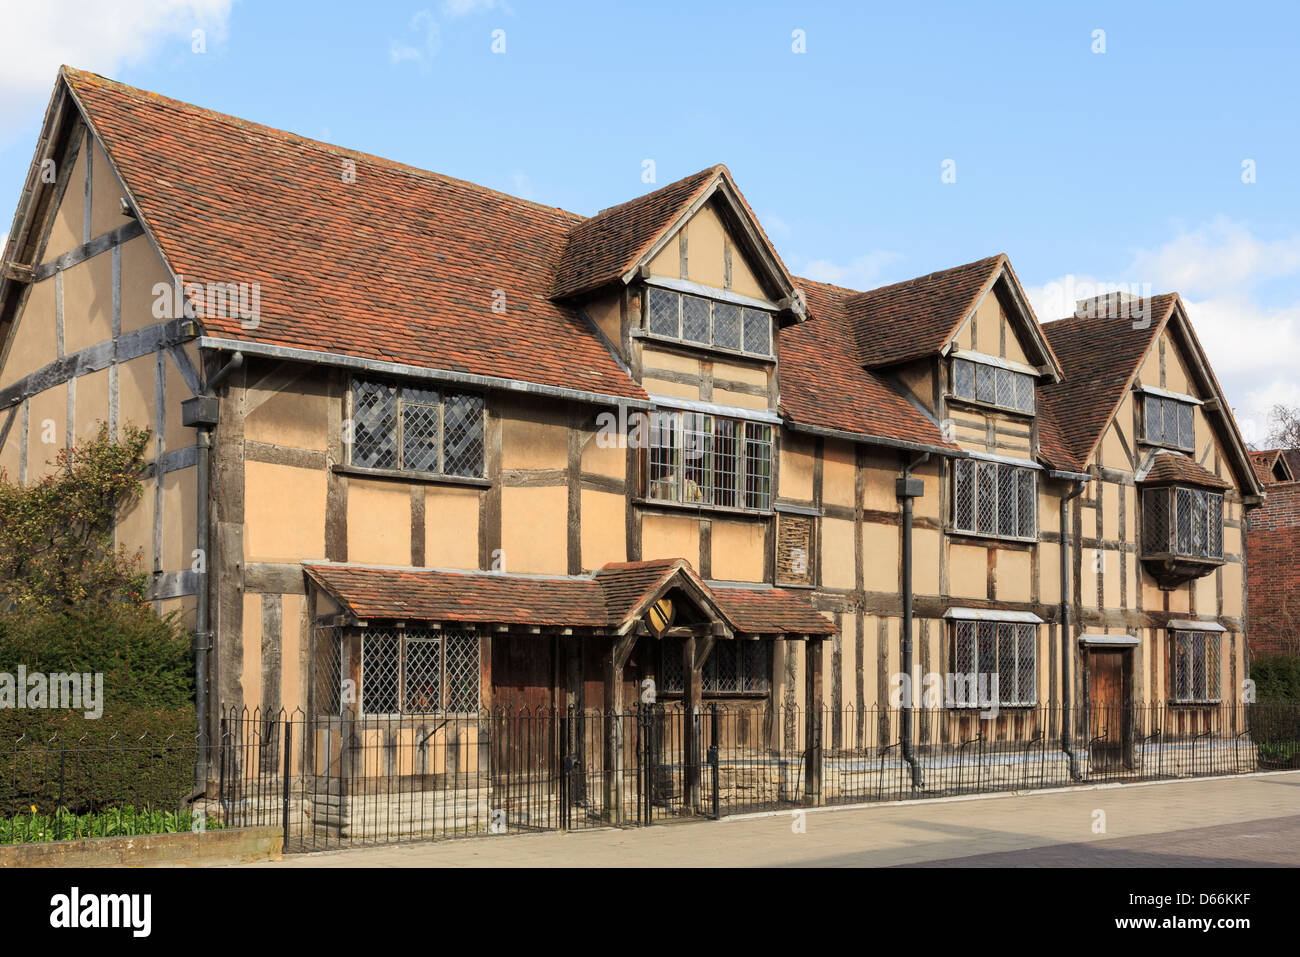 Shakespeares Geburtshaus in klassischem Fachwerkhaus aus dem 16. Jahrhundert altes Haus jetzt ein Museum. Henley Street Stratford-upon-Avon, Warwickshire, England Großbritannien Stockfoto